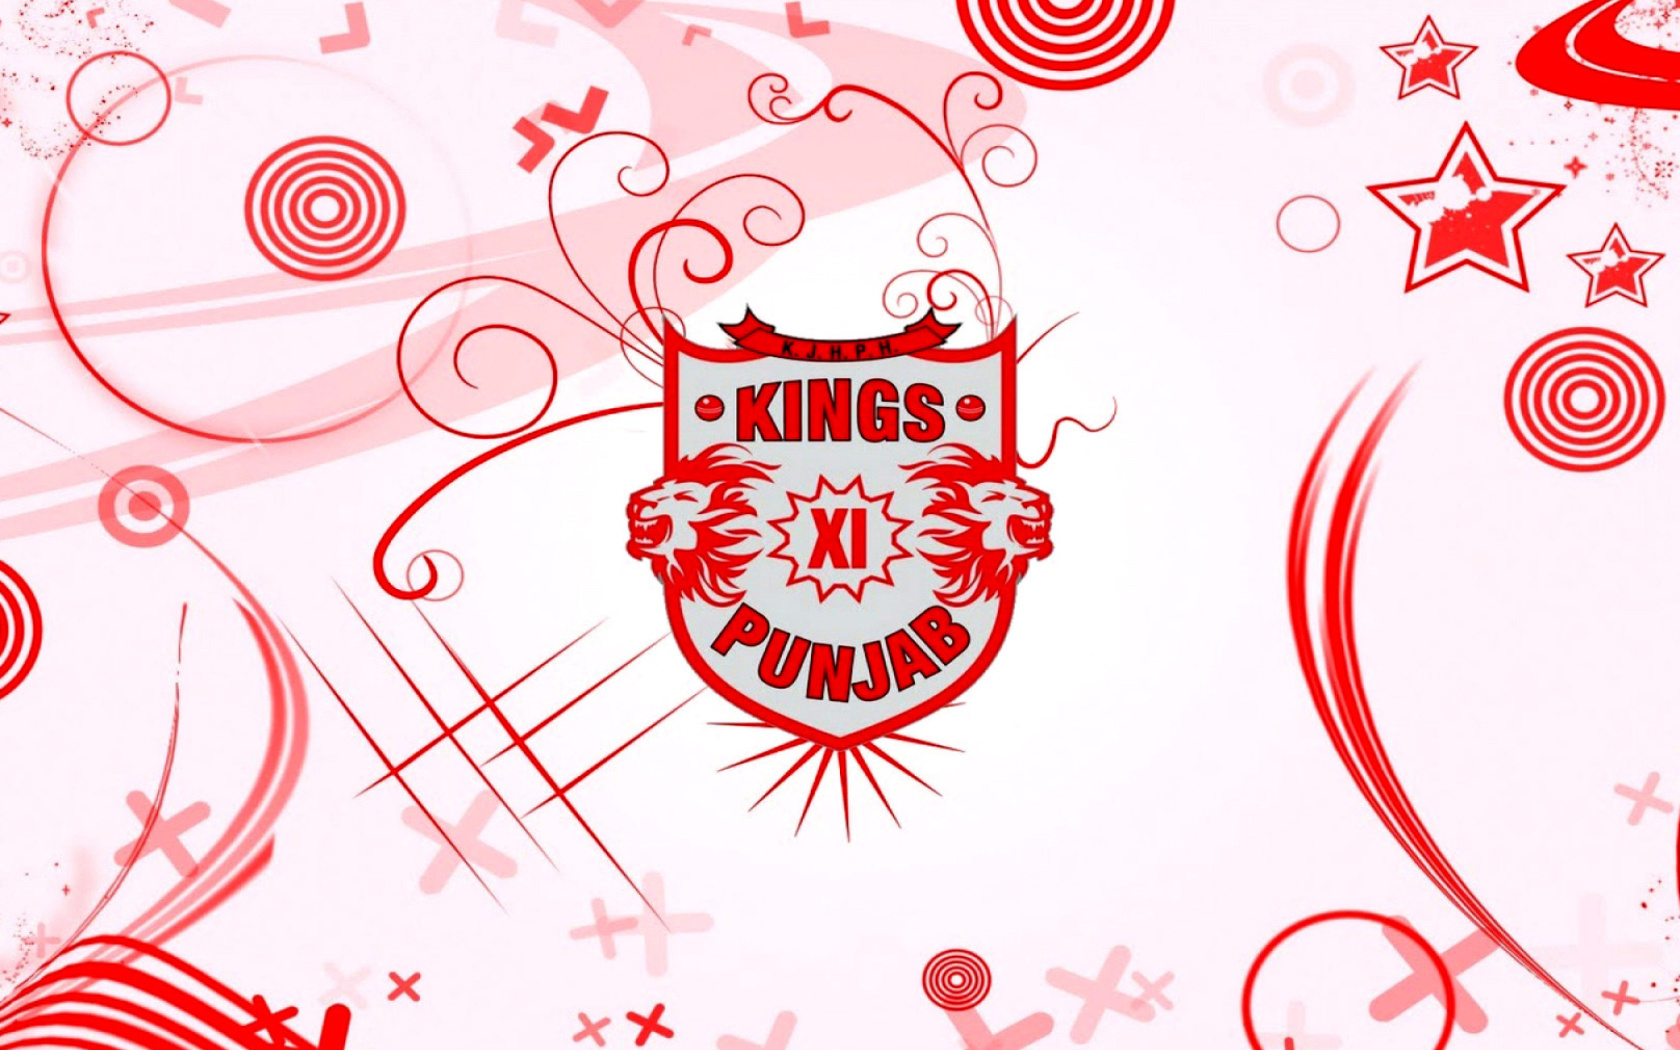 Kings Xi Punjab wallpaper 1680x1050